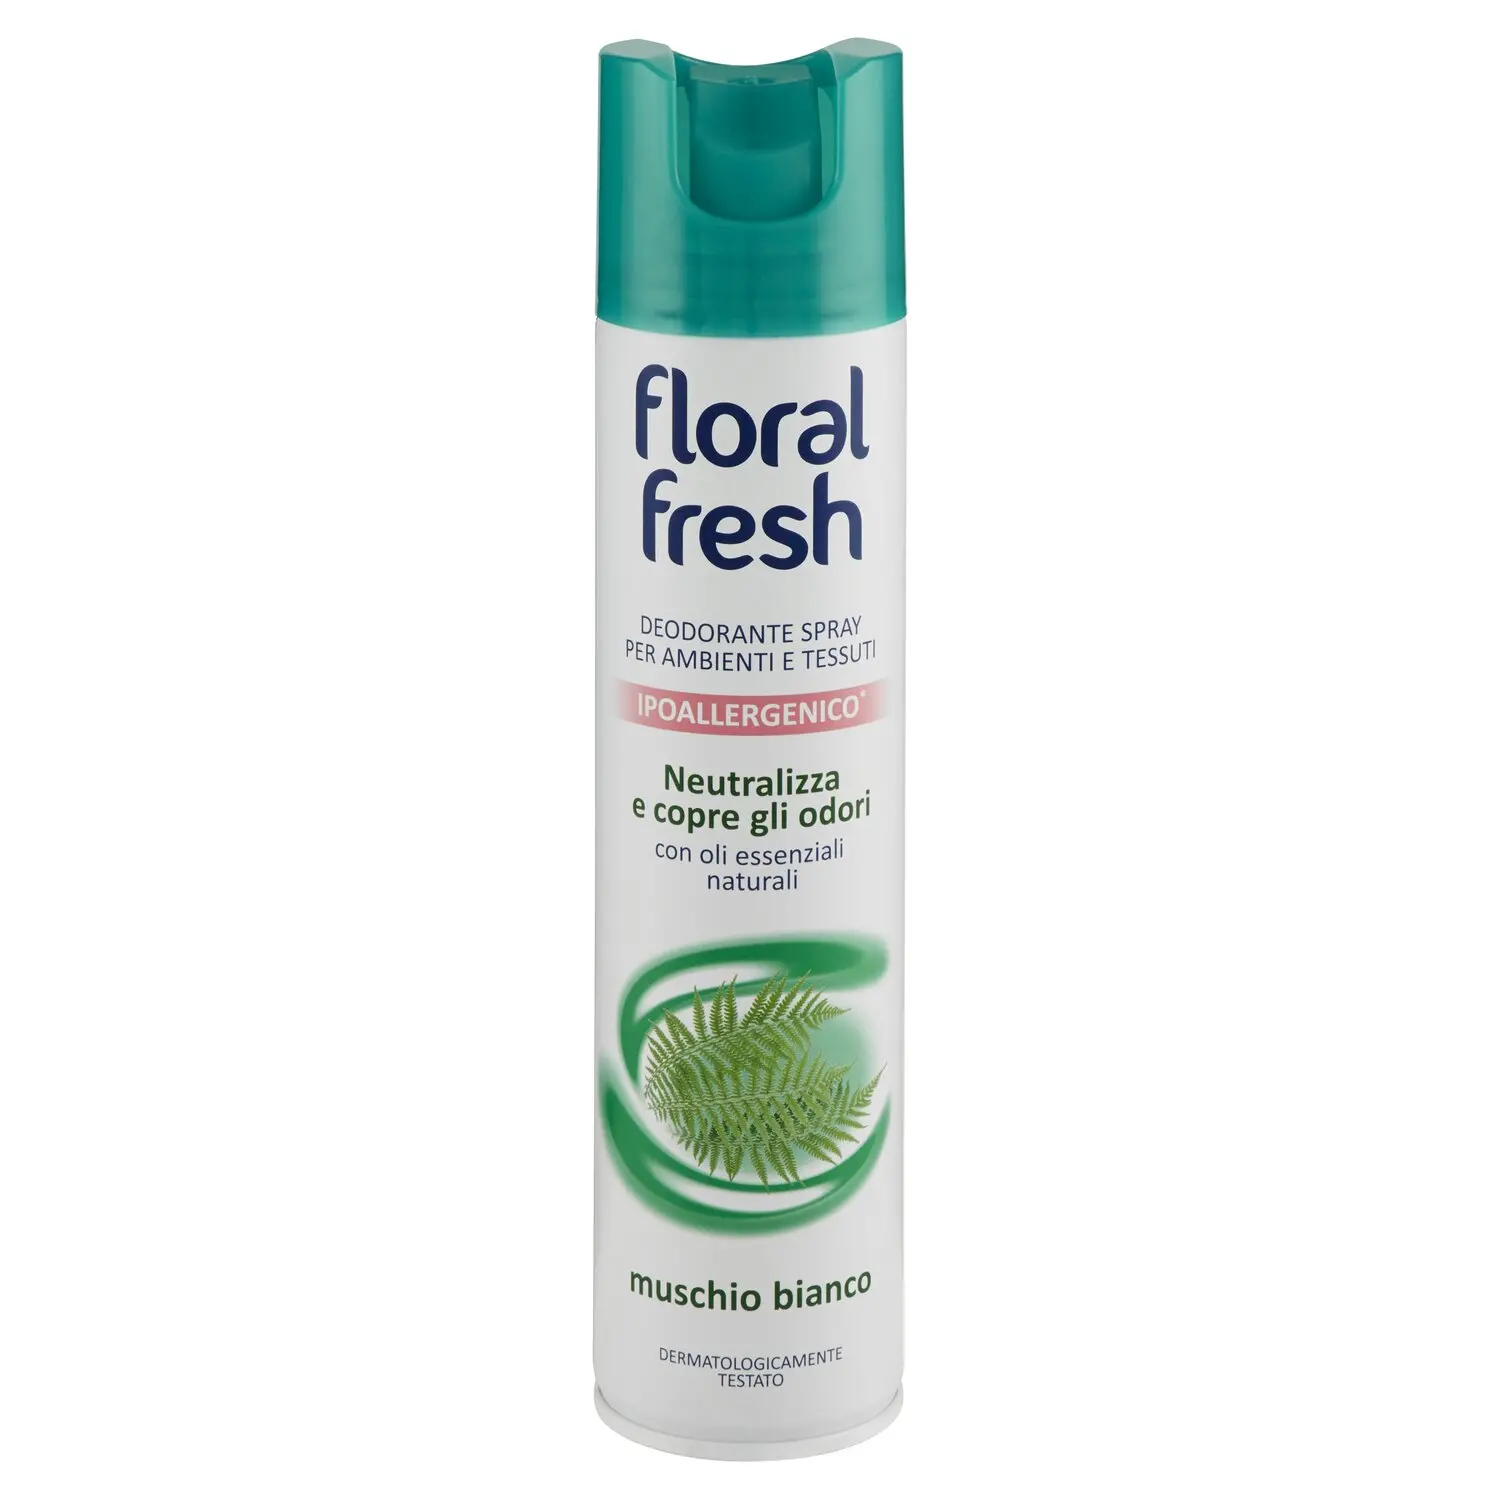 floral fresh Deodorante Spray per Ambienti e Tessuti muschio